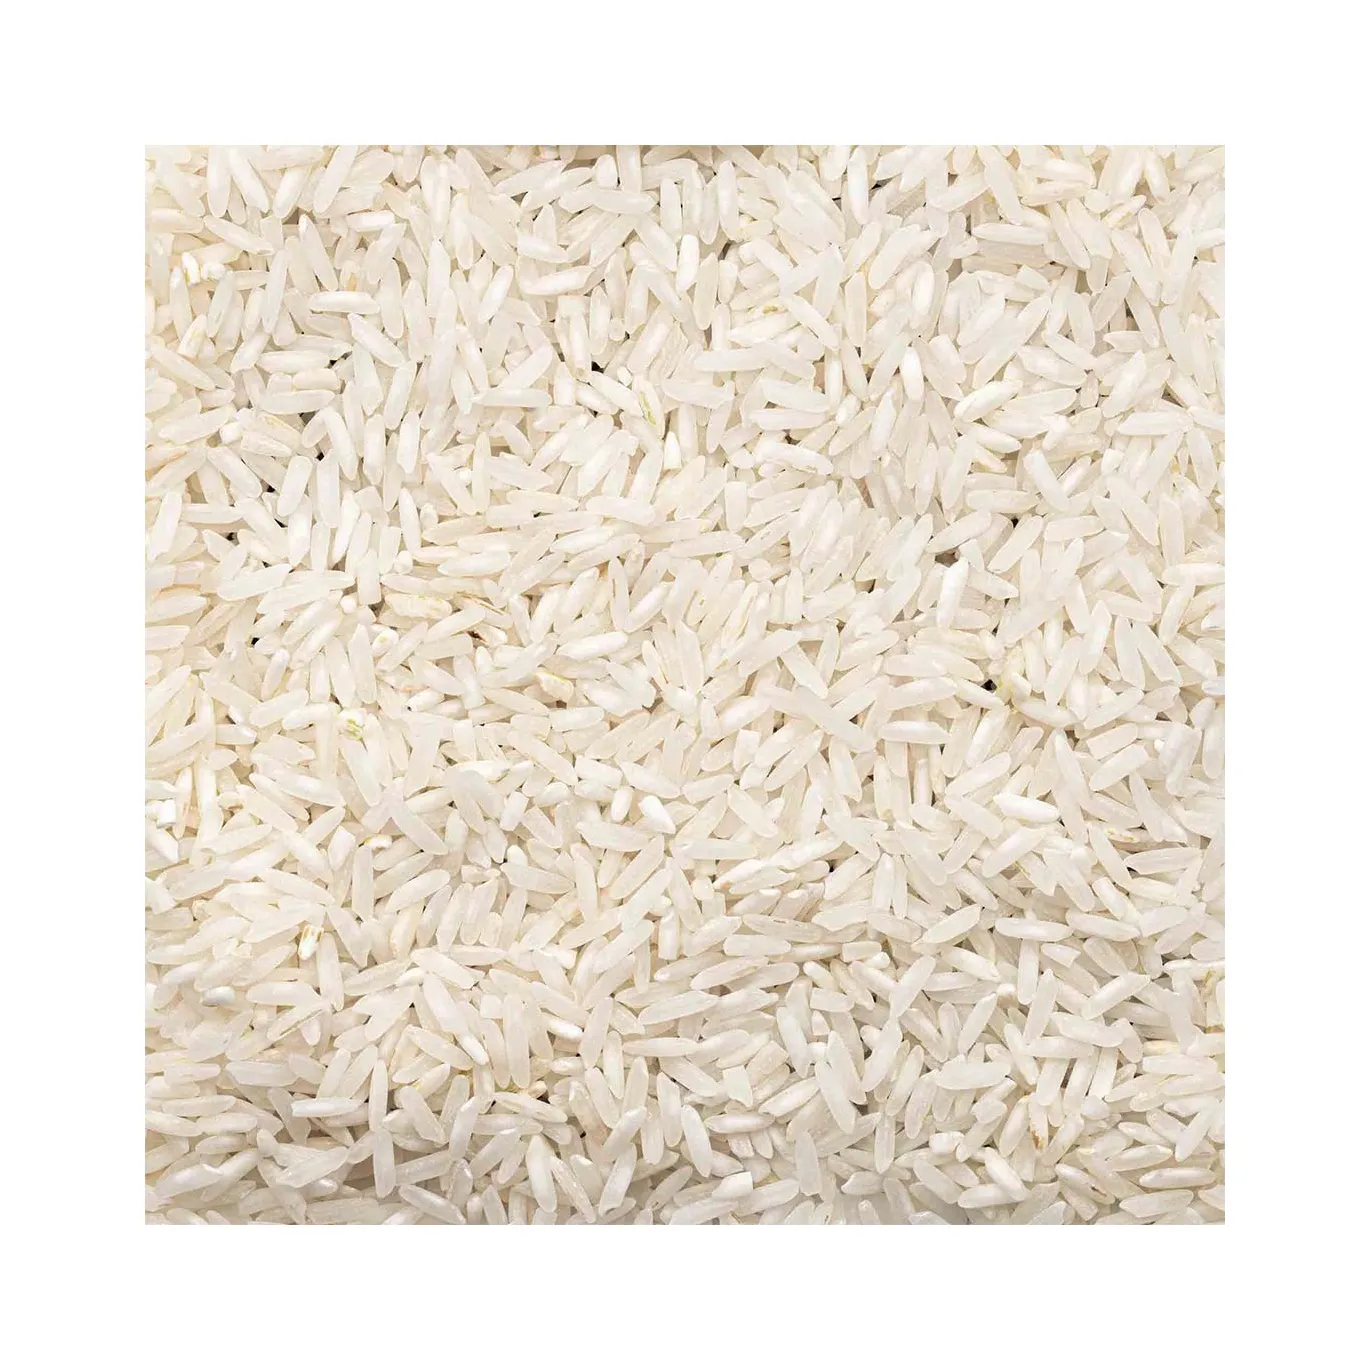 Gạo túi hợp lý gạo nóng từ Brazil Nhà cung cấp gạo chất lượng tốt nhất có sẵn để Xuất Khẩu.